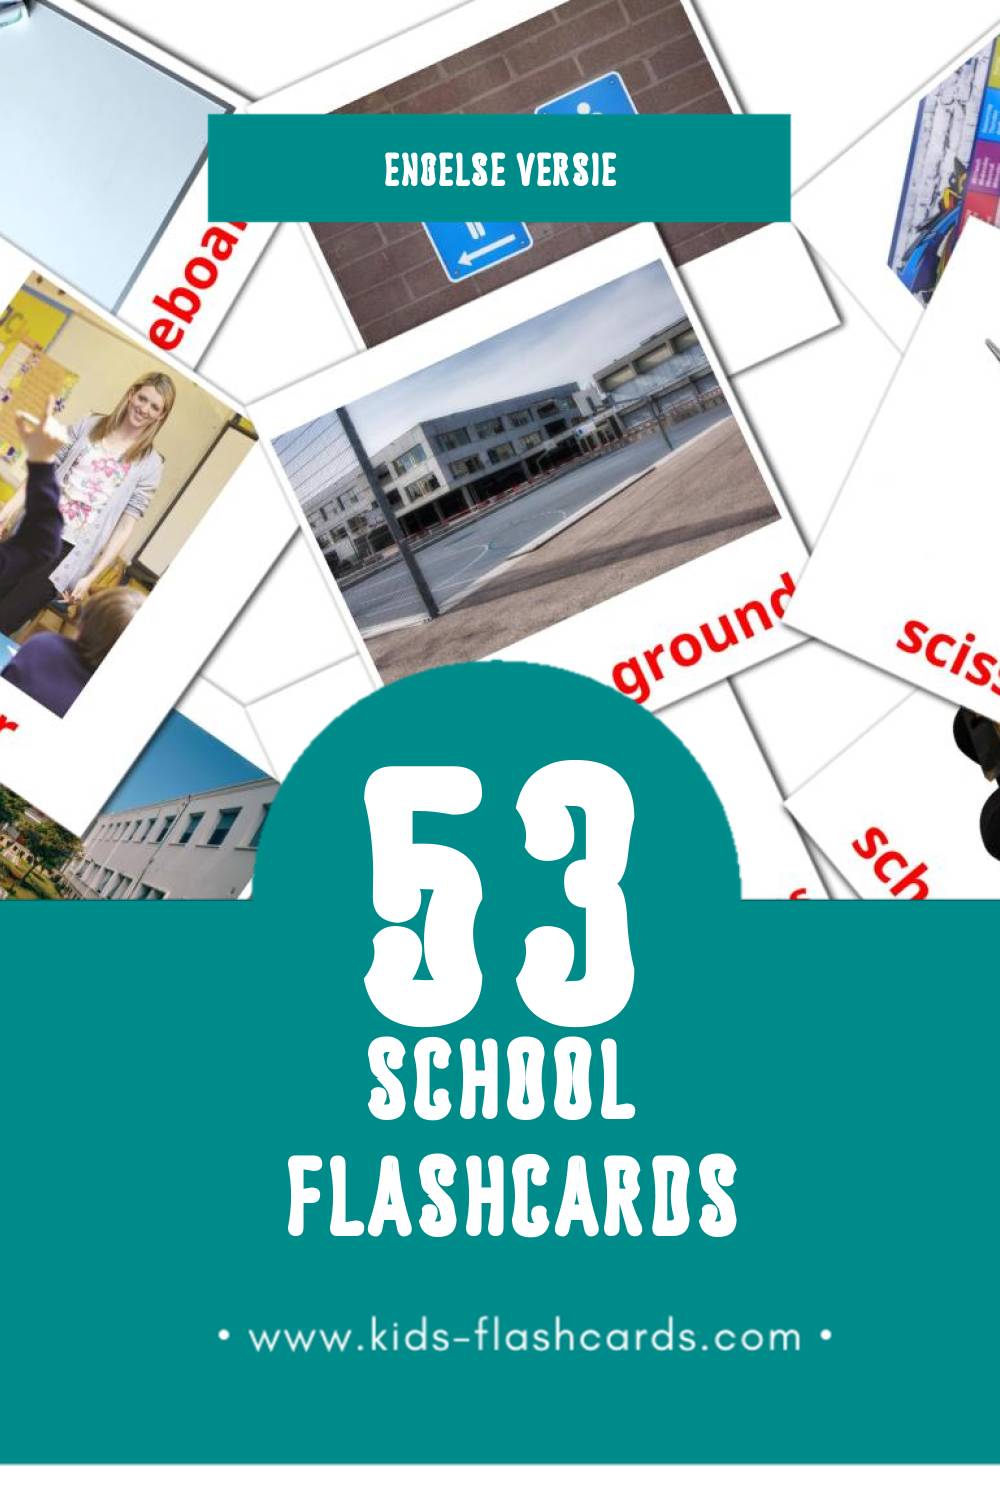 Visuele School Flashcards voor Kleuters (53 kaarten in het Engels)